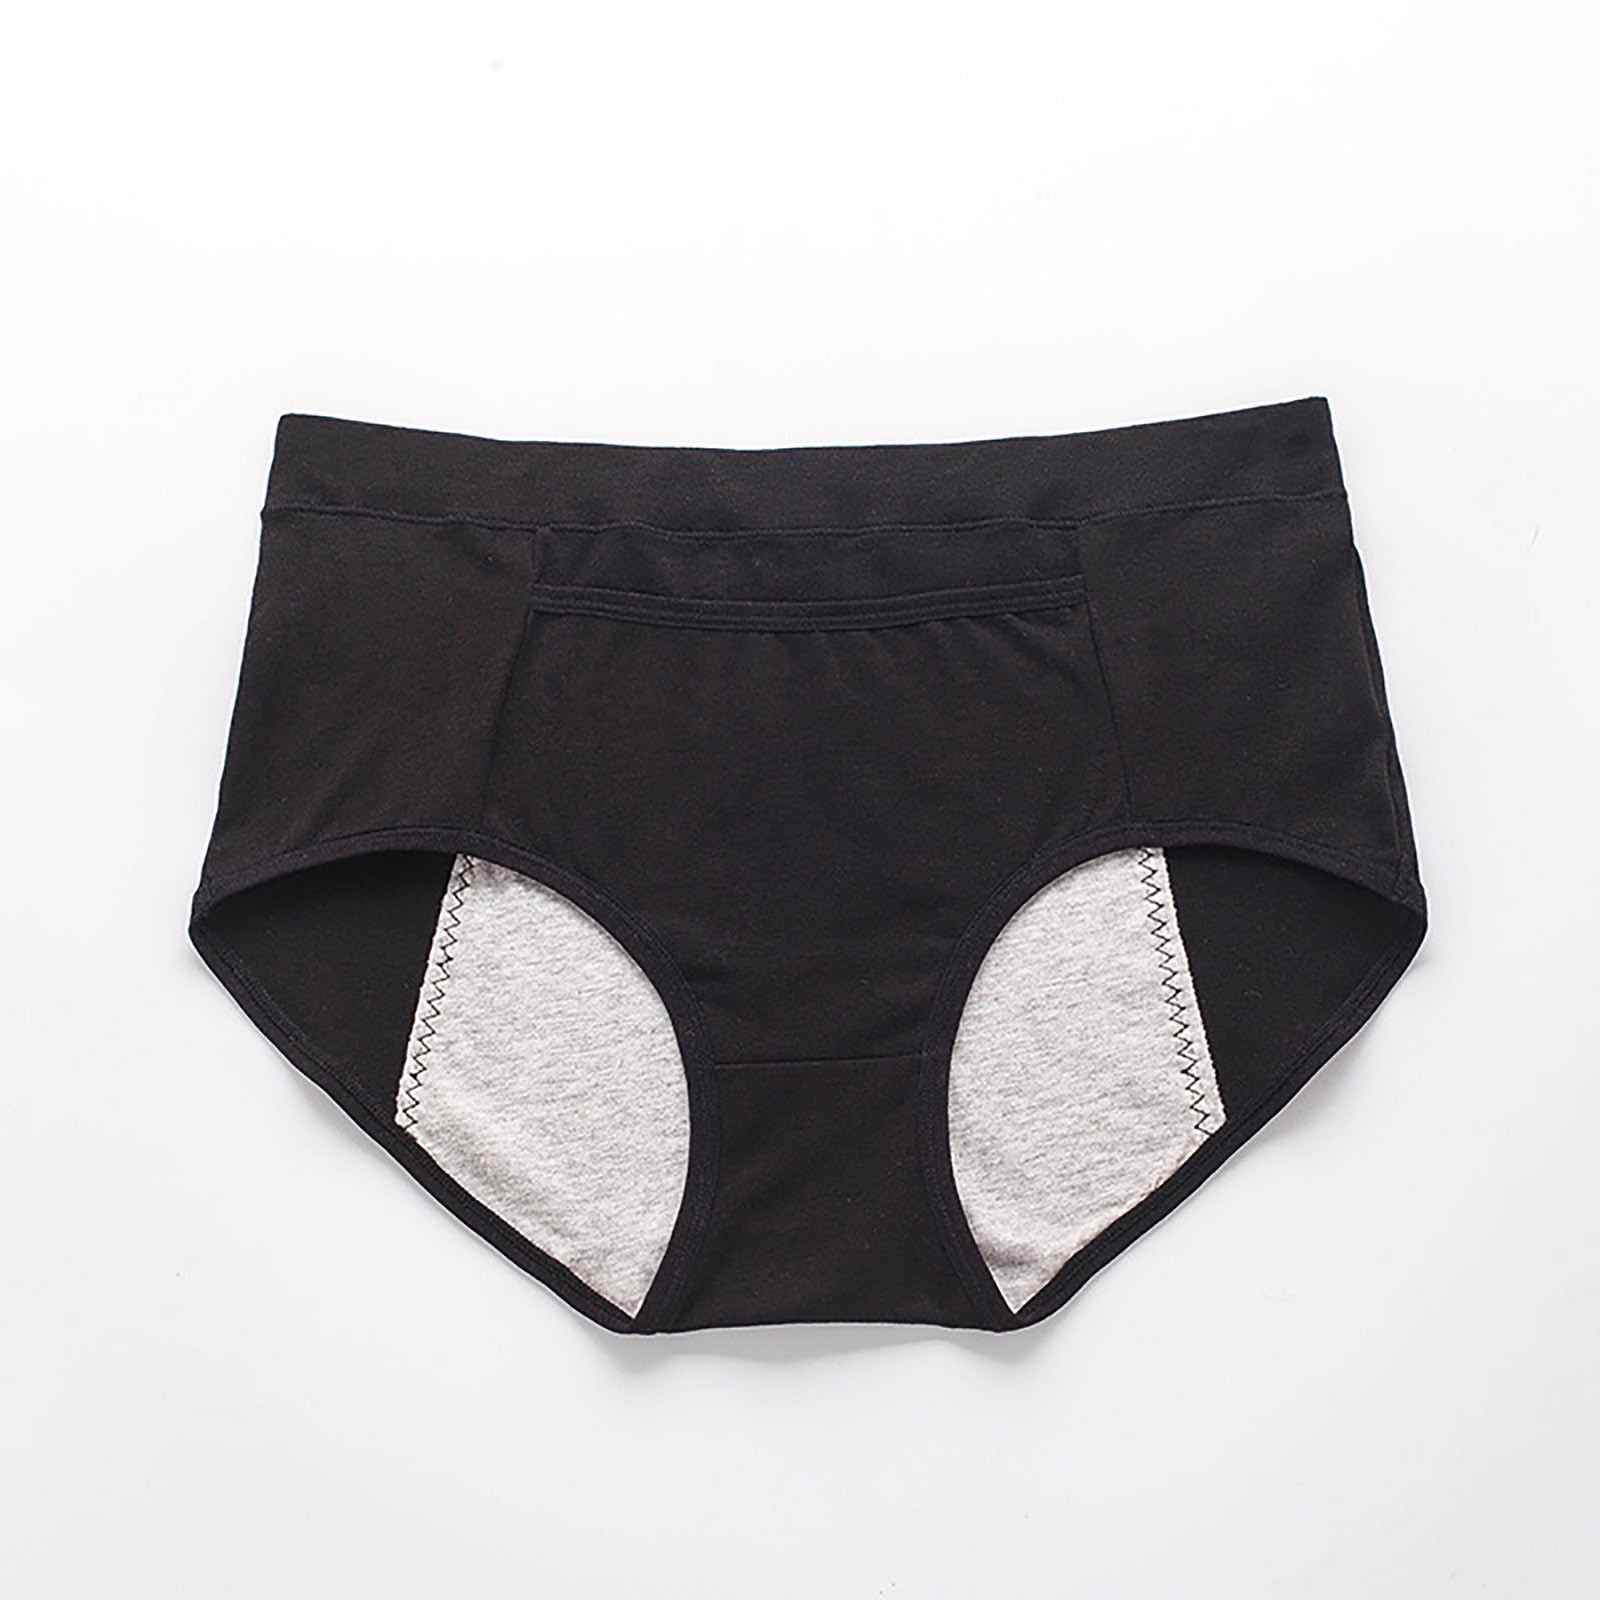 Ichuanyi Women's Large Underwear Medium High Waist Middle-Aged Underwear - image 1 of 3